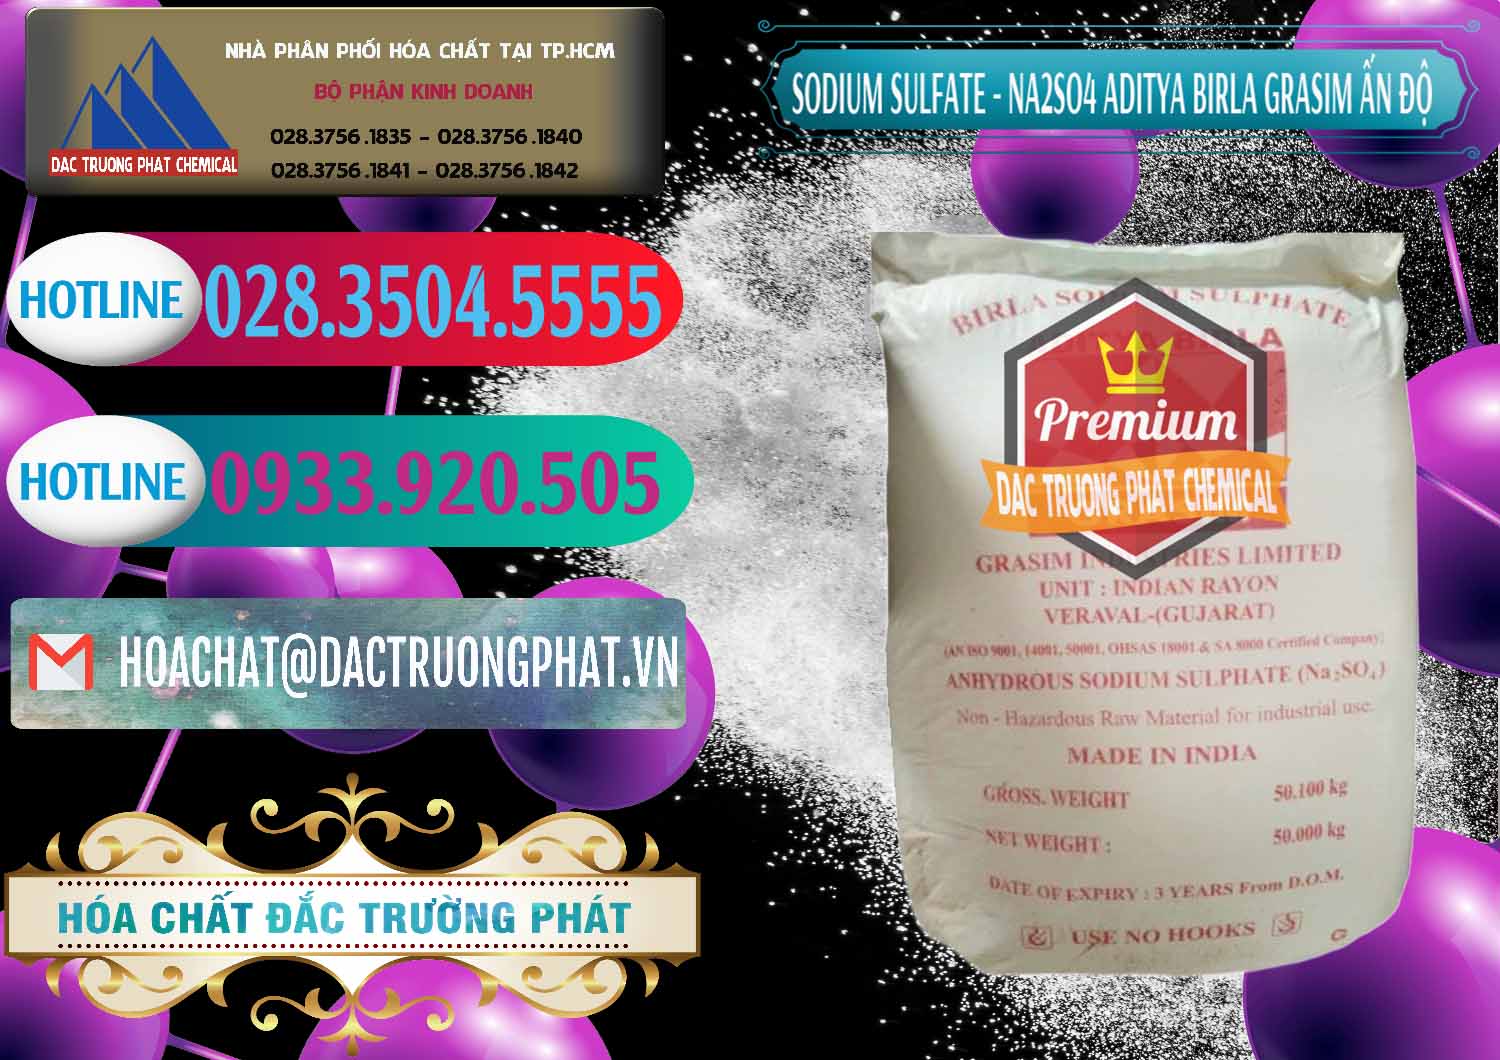 Nơi chuyên cung ứng _ bán Sodium Sulphate - Muối Sunfat Na2SO4 Grasim Ấn Độ India - 0356 - Cung cấp & kinh doanh hóa chất tại TP.HCM - truongphat.vn